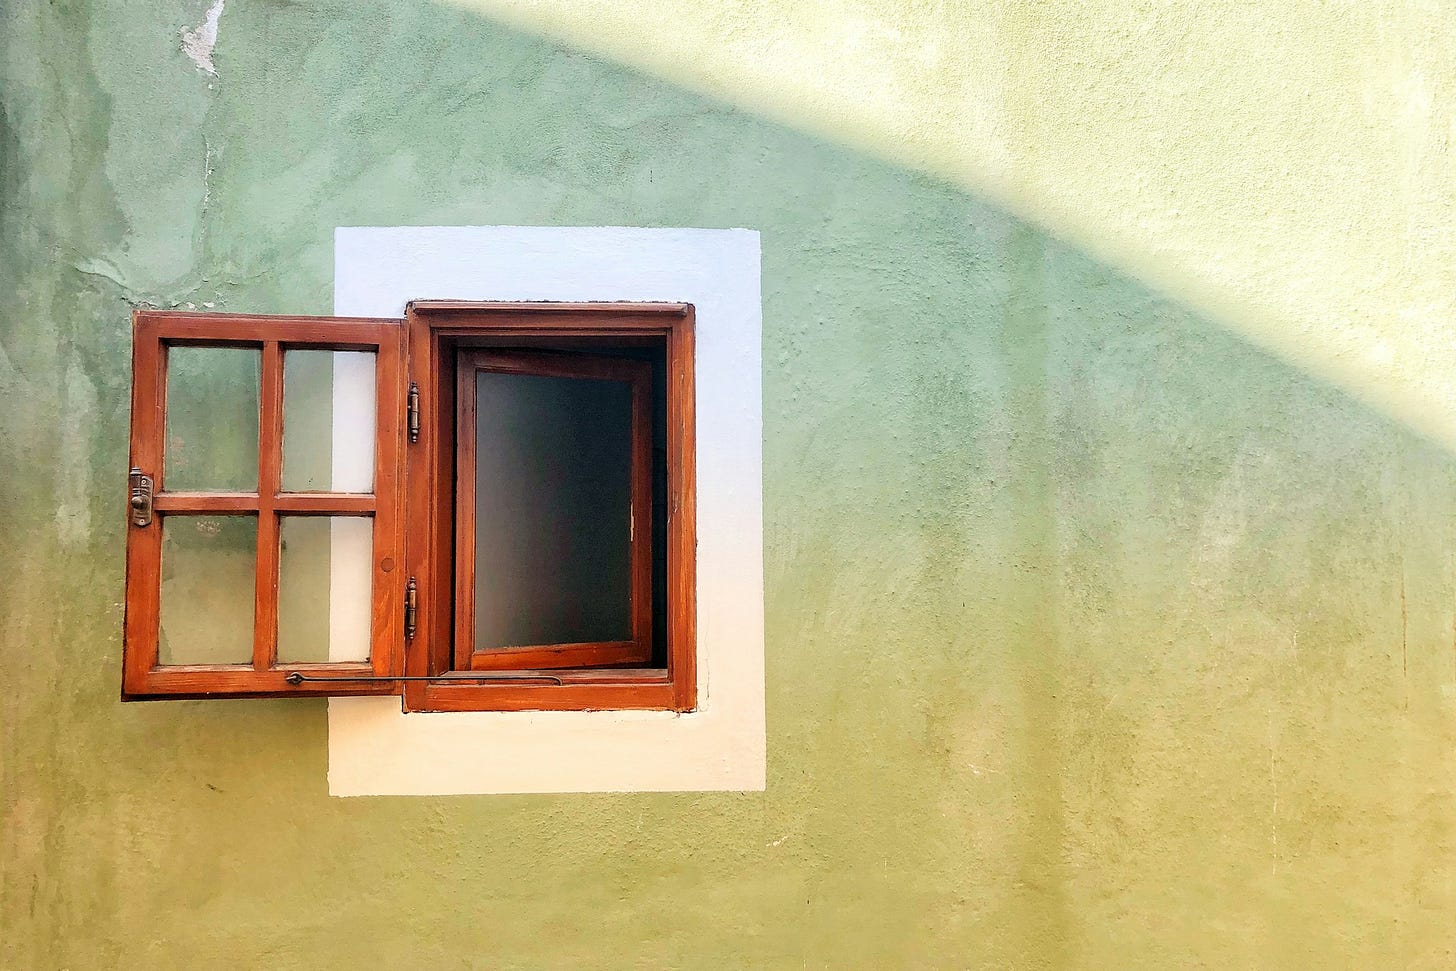 Muro verde chiaro con il sole che illumina obliquamente la parte in alto a destra. In mezzo, leggermente decentrata a sinistra, c'è una finestra di legno aperta, circondata da un rettangolo di pittura bianca lungo il contorno. 